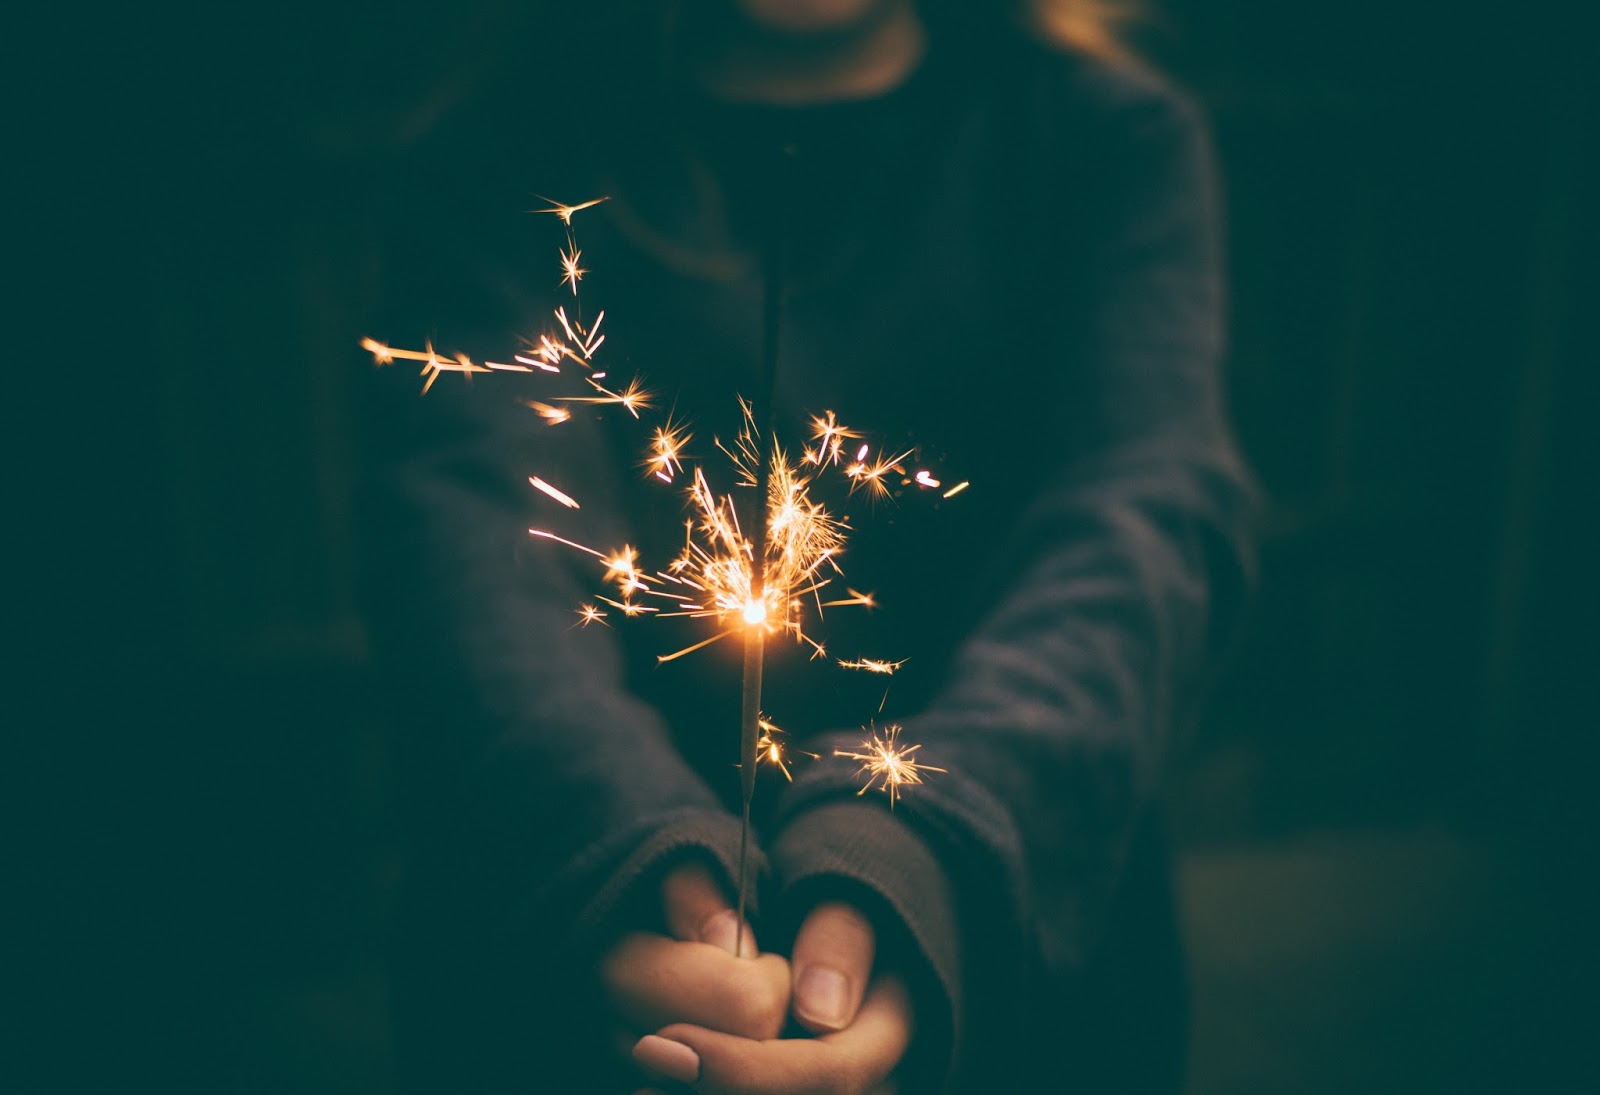 Hands holding a sparkler firework in the dark